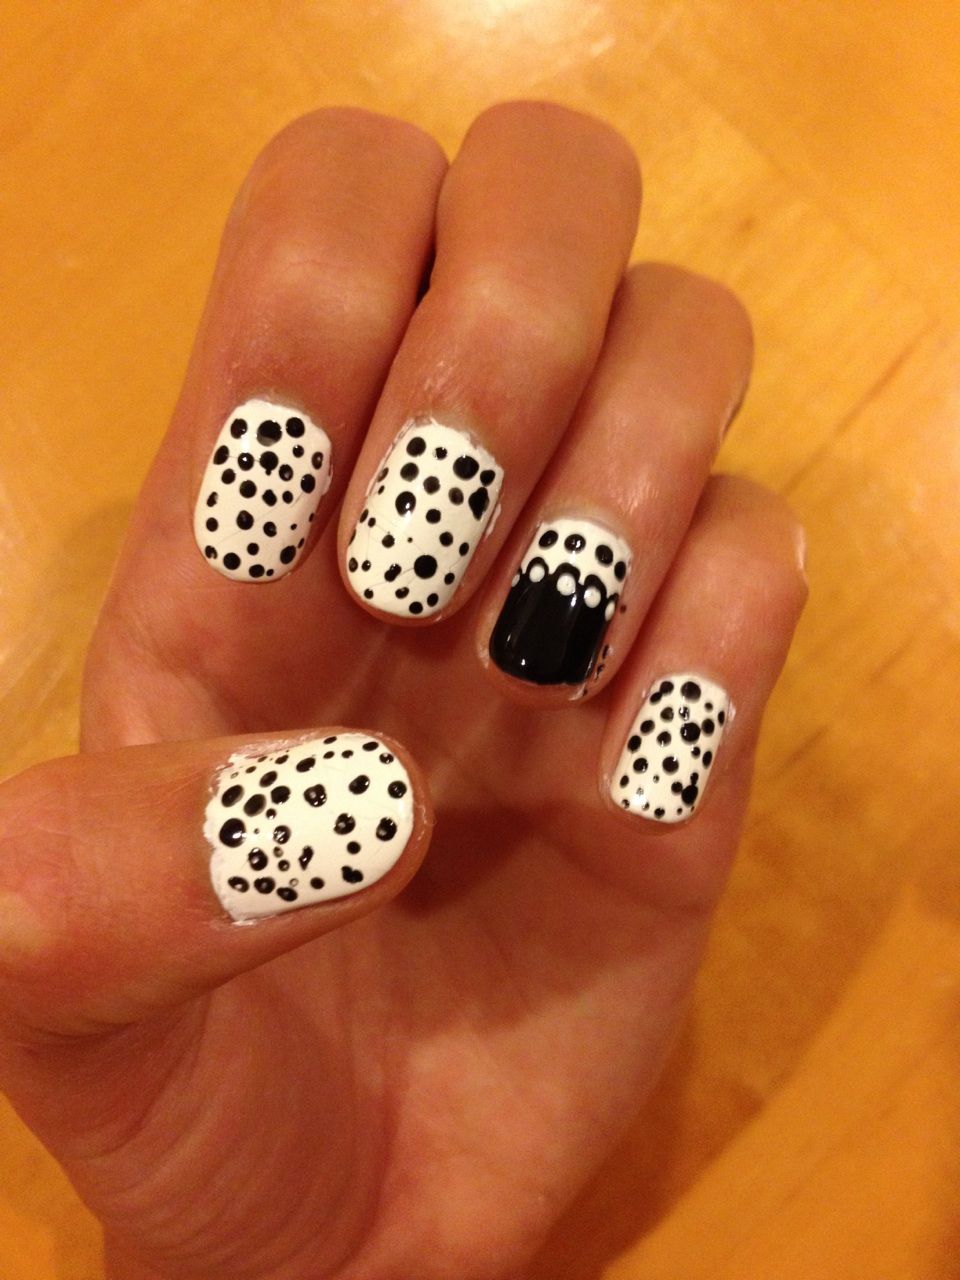 Cool Black Polka Dots Nails